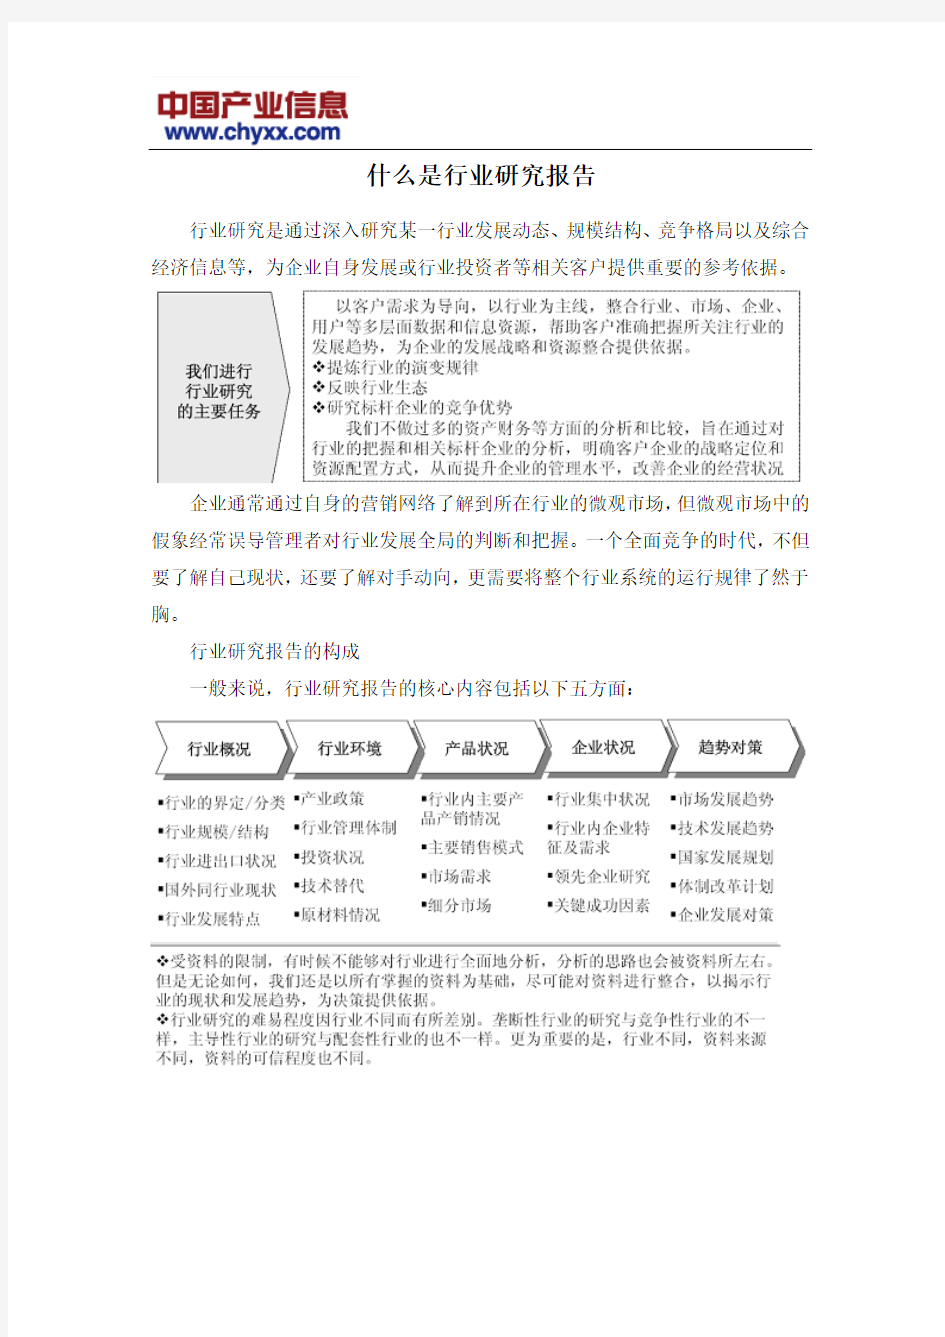 2016-2022年中国汽车滤清器电商行业市场全景调研报告